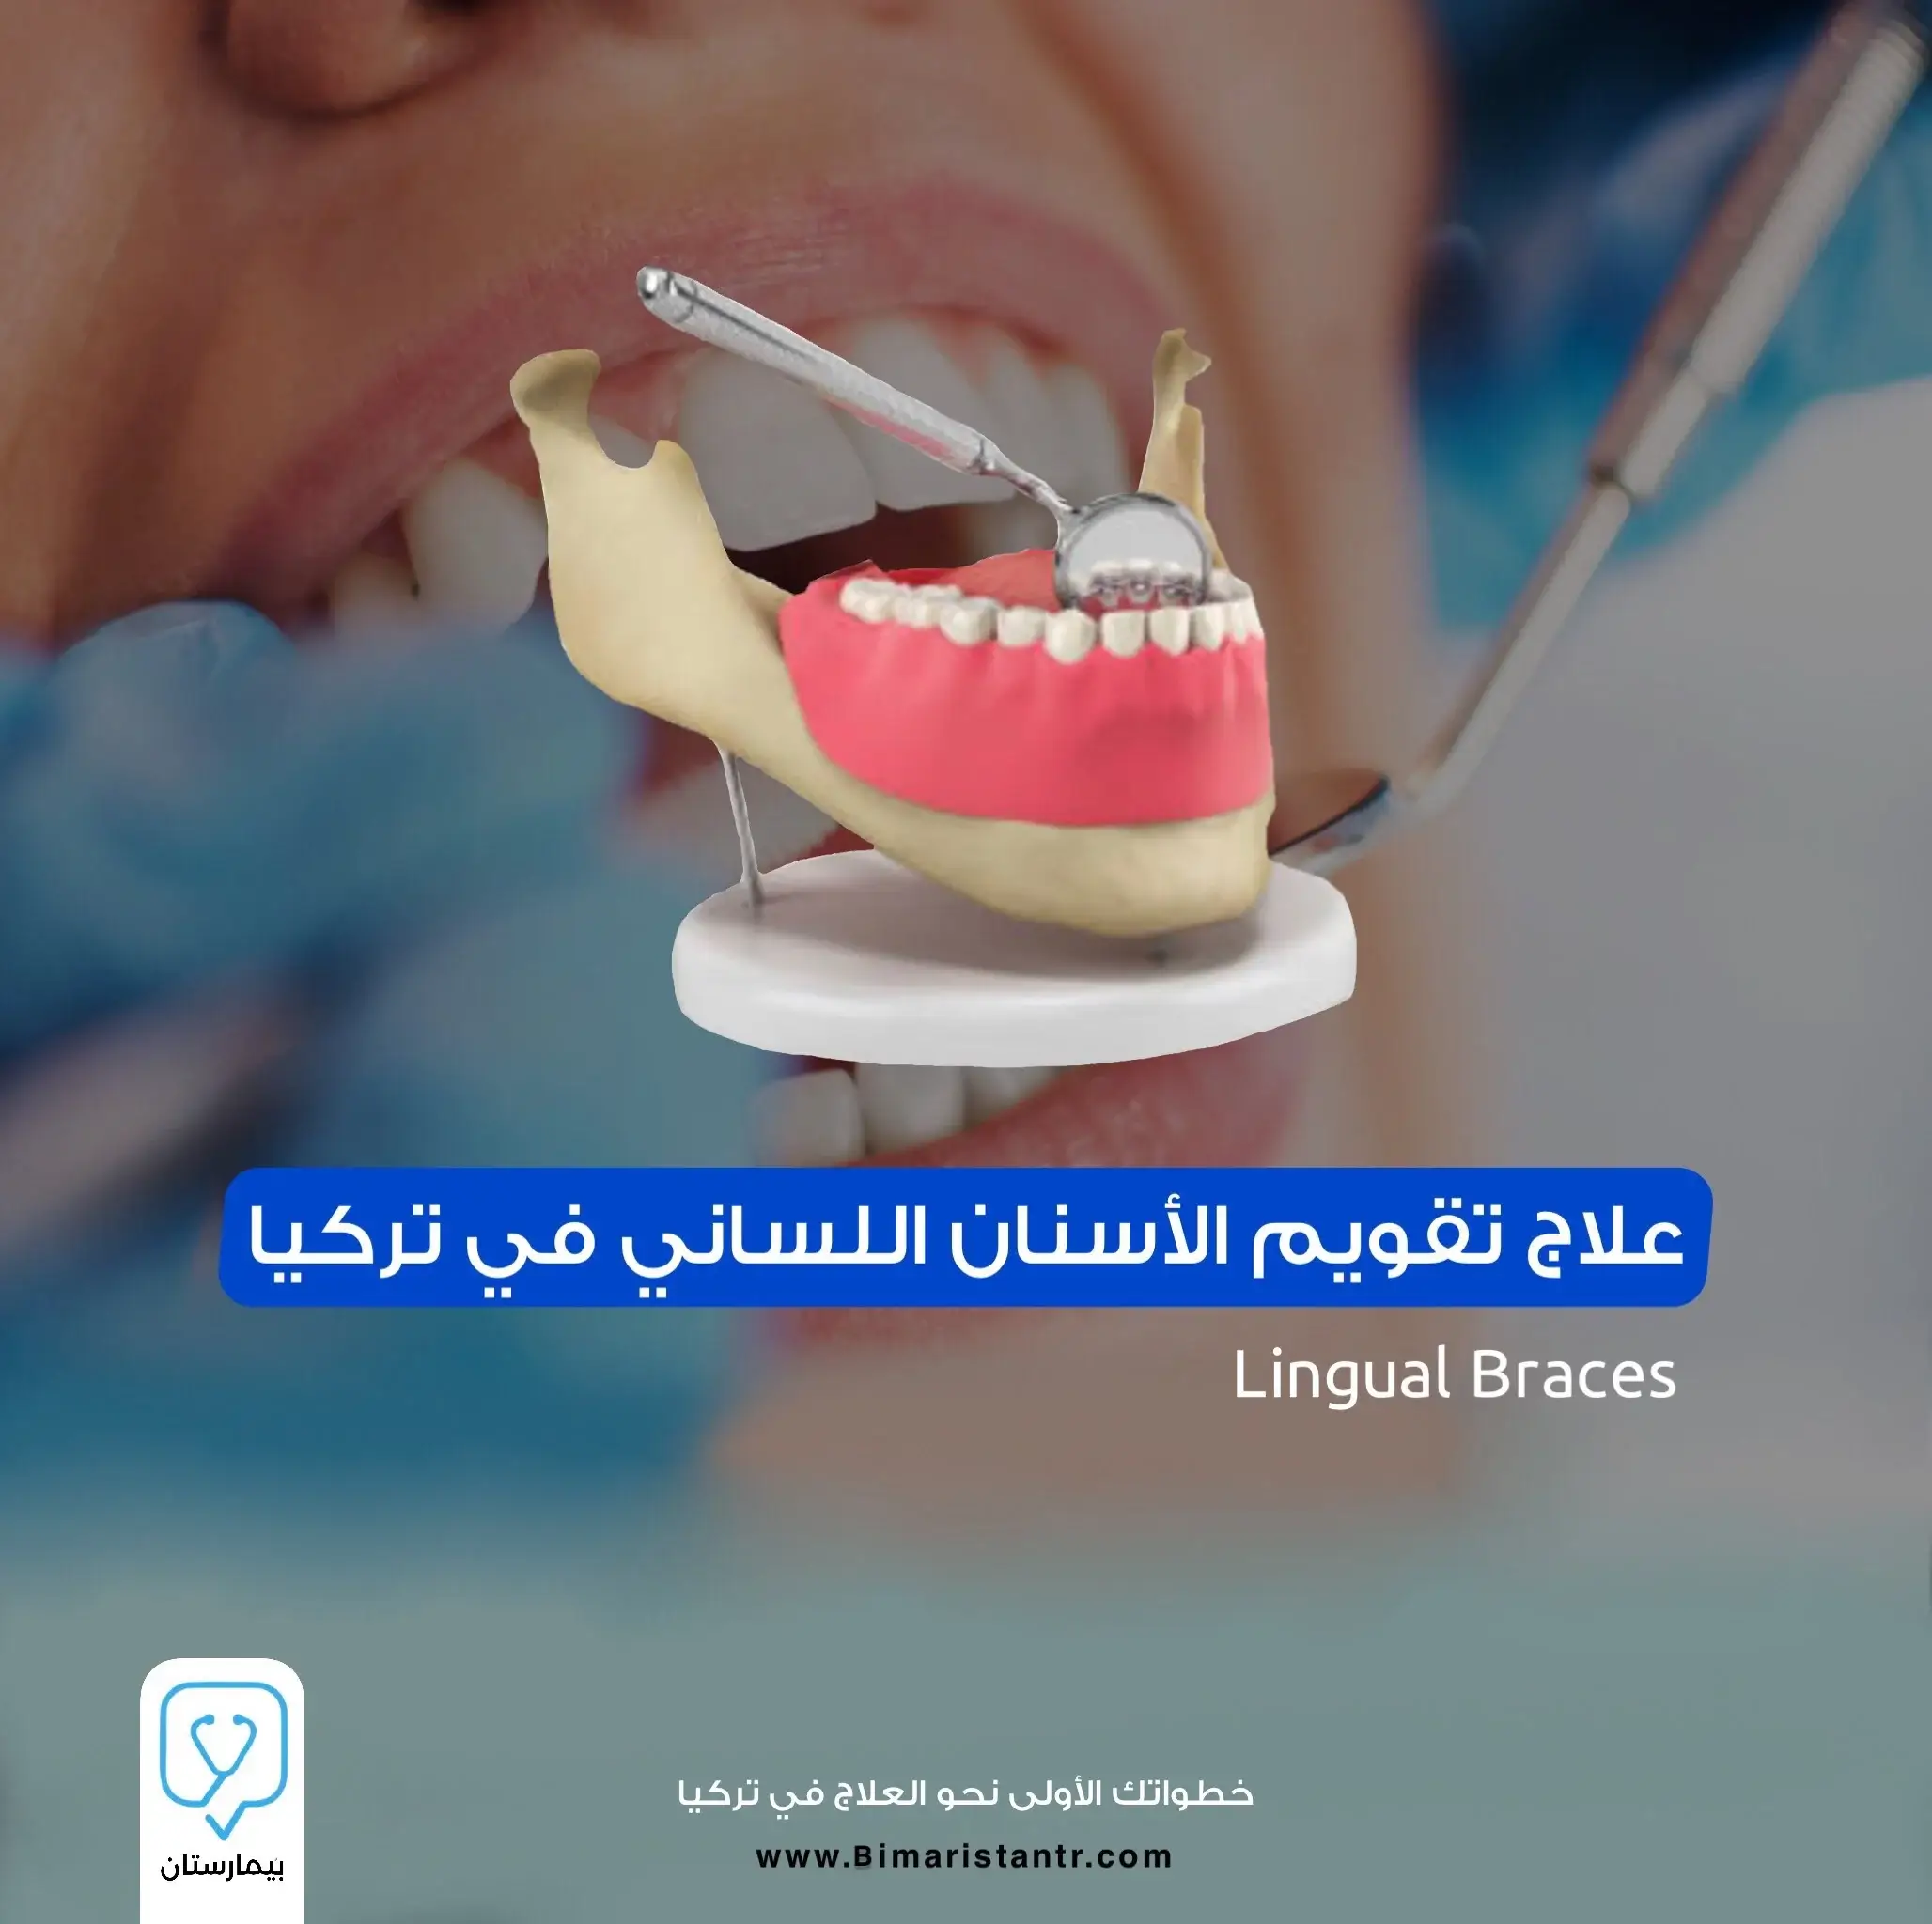 Türkiye'de lingual ortodontik tedavi